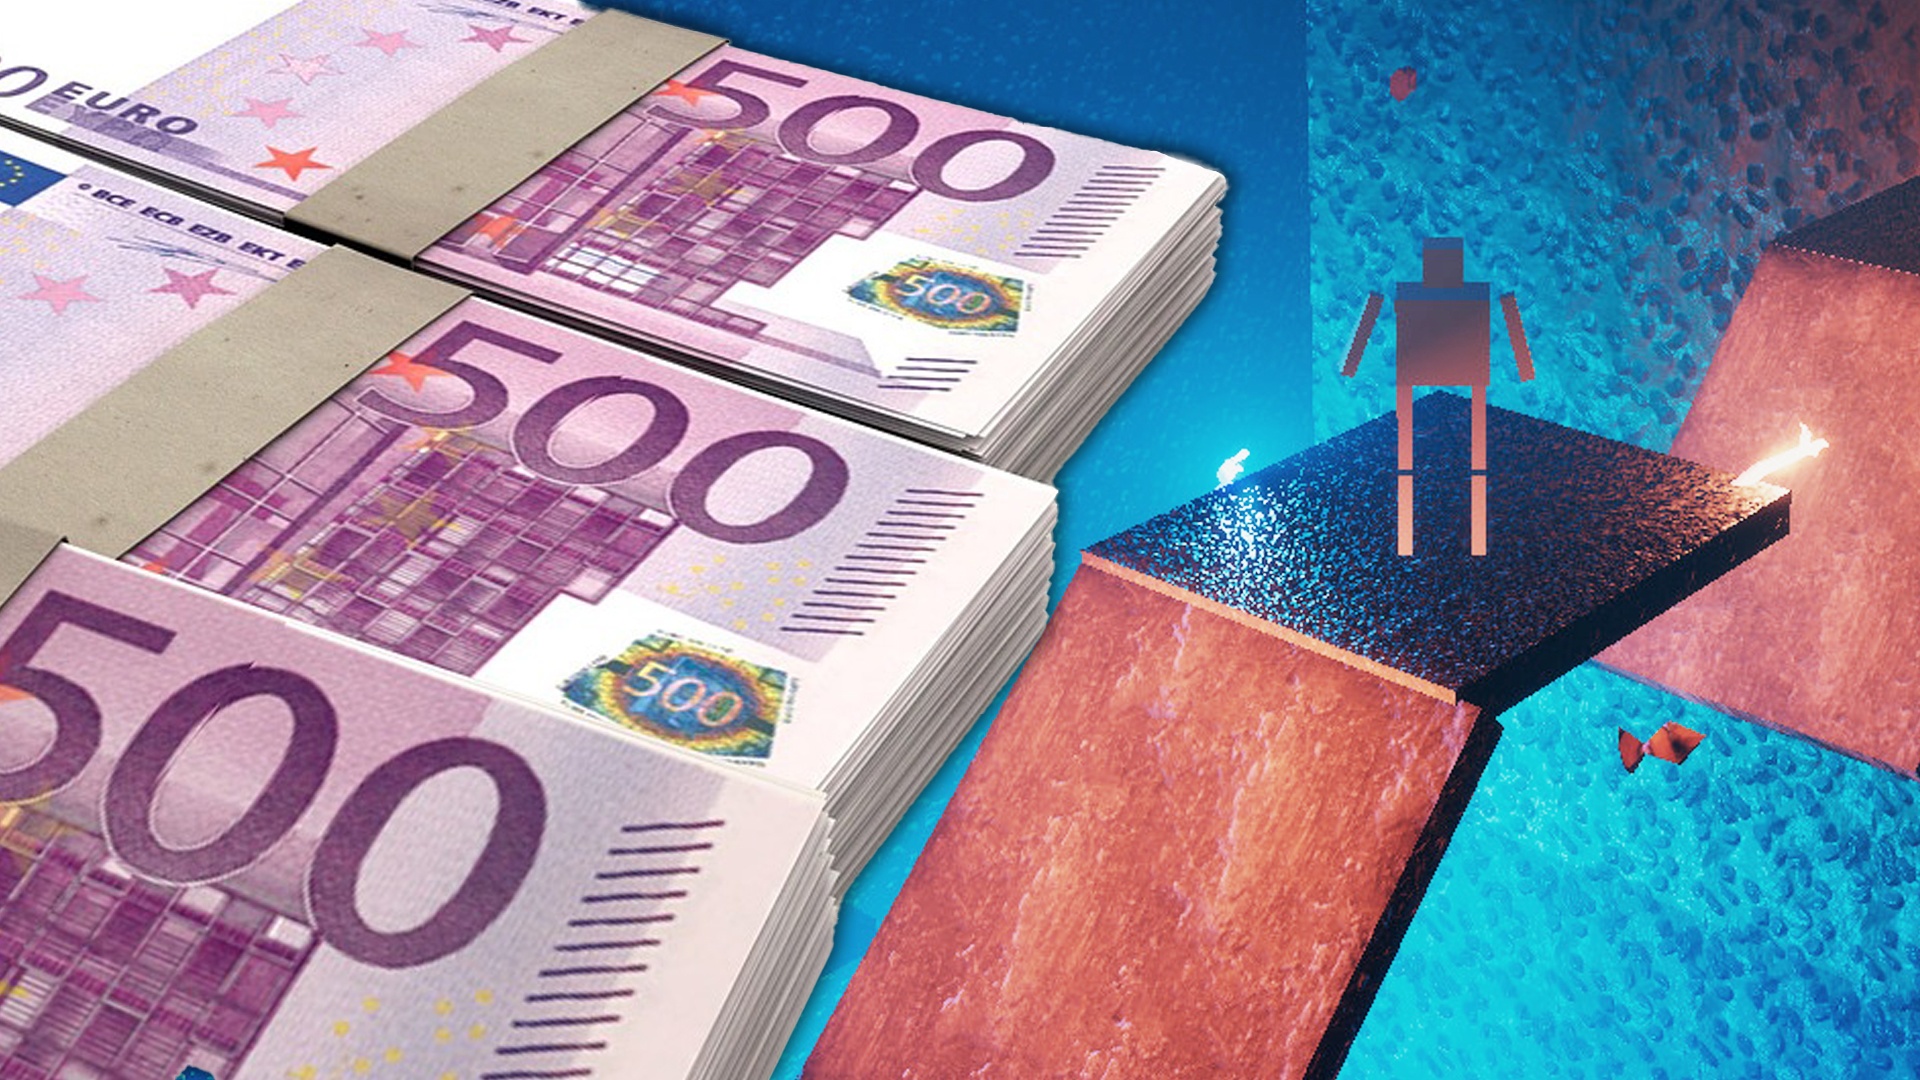 #Teuerstes Steam-Spiel kostet erst halbe Million Euro, jetzt gar nichts mehr – was ist da los?